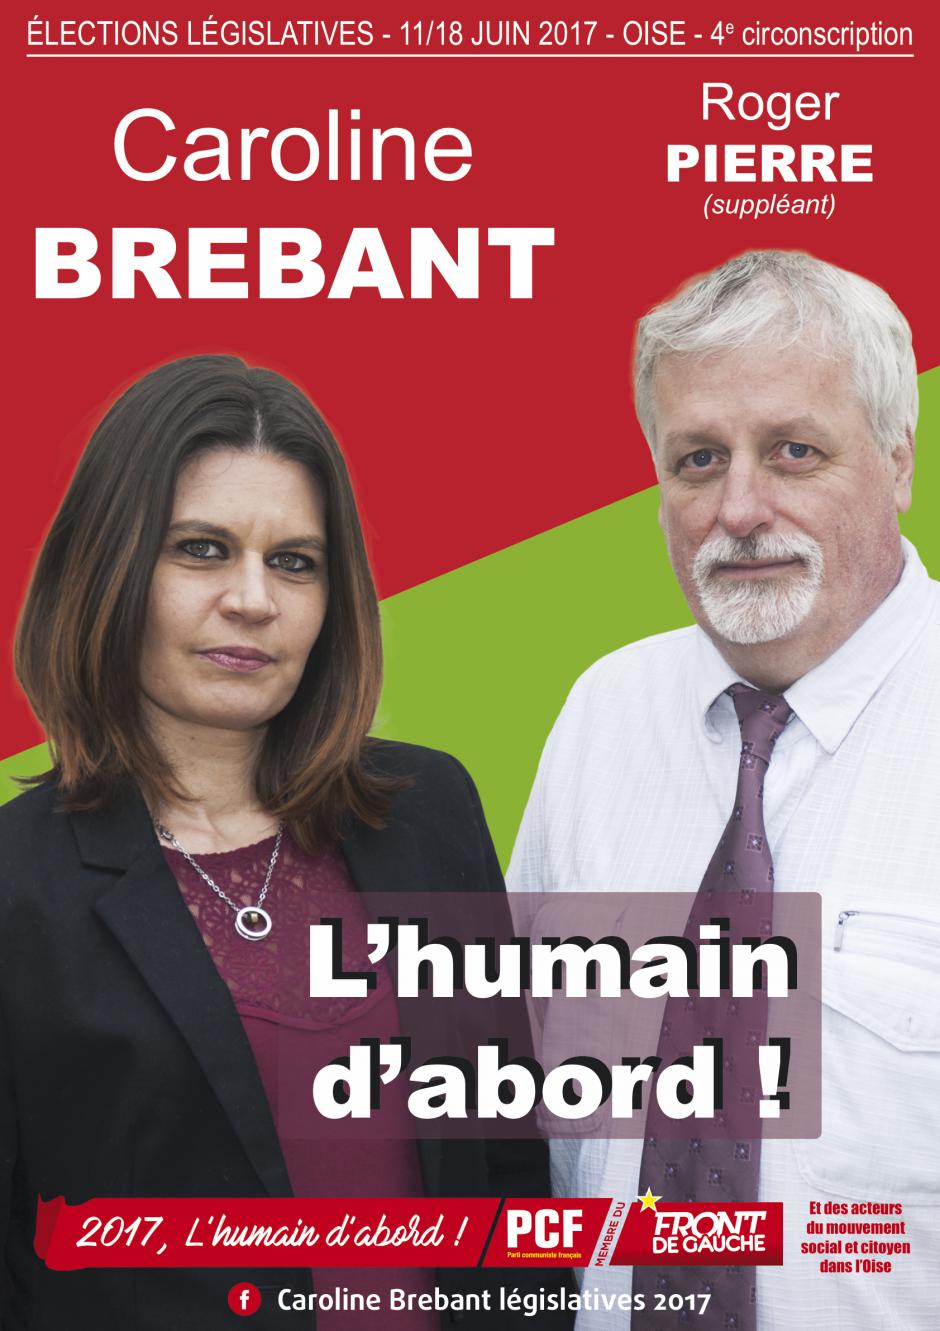 Affiche de campagne de Caroline Brebant et Roger Pierre aux Législatives 2017 - 4e circonscription de l'Oise, 23 mars 2017